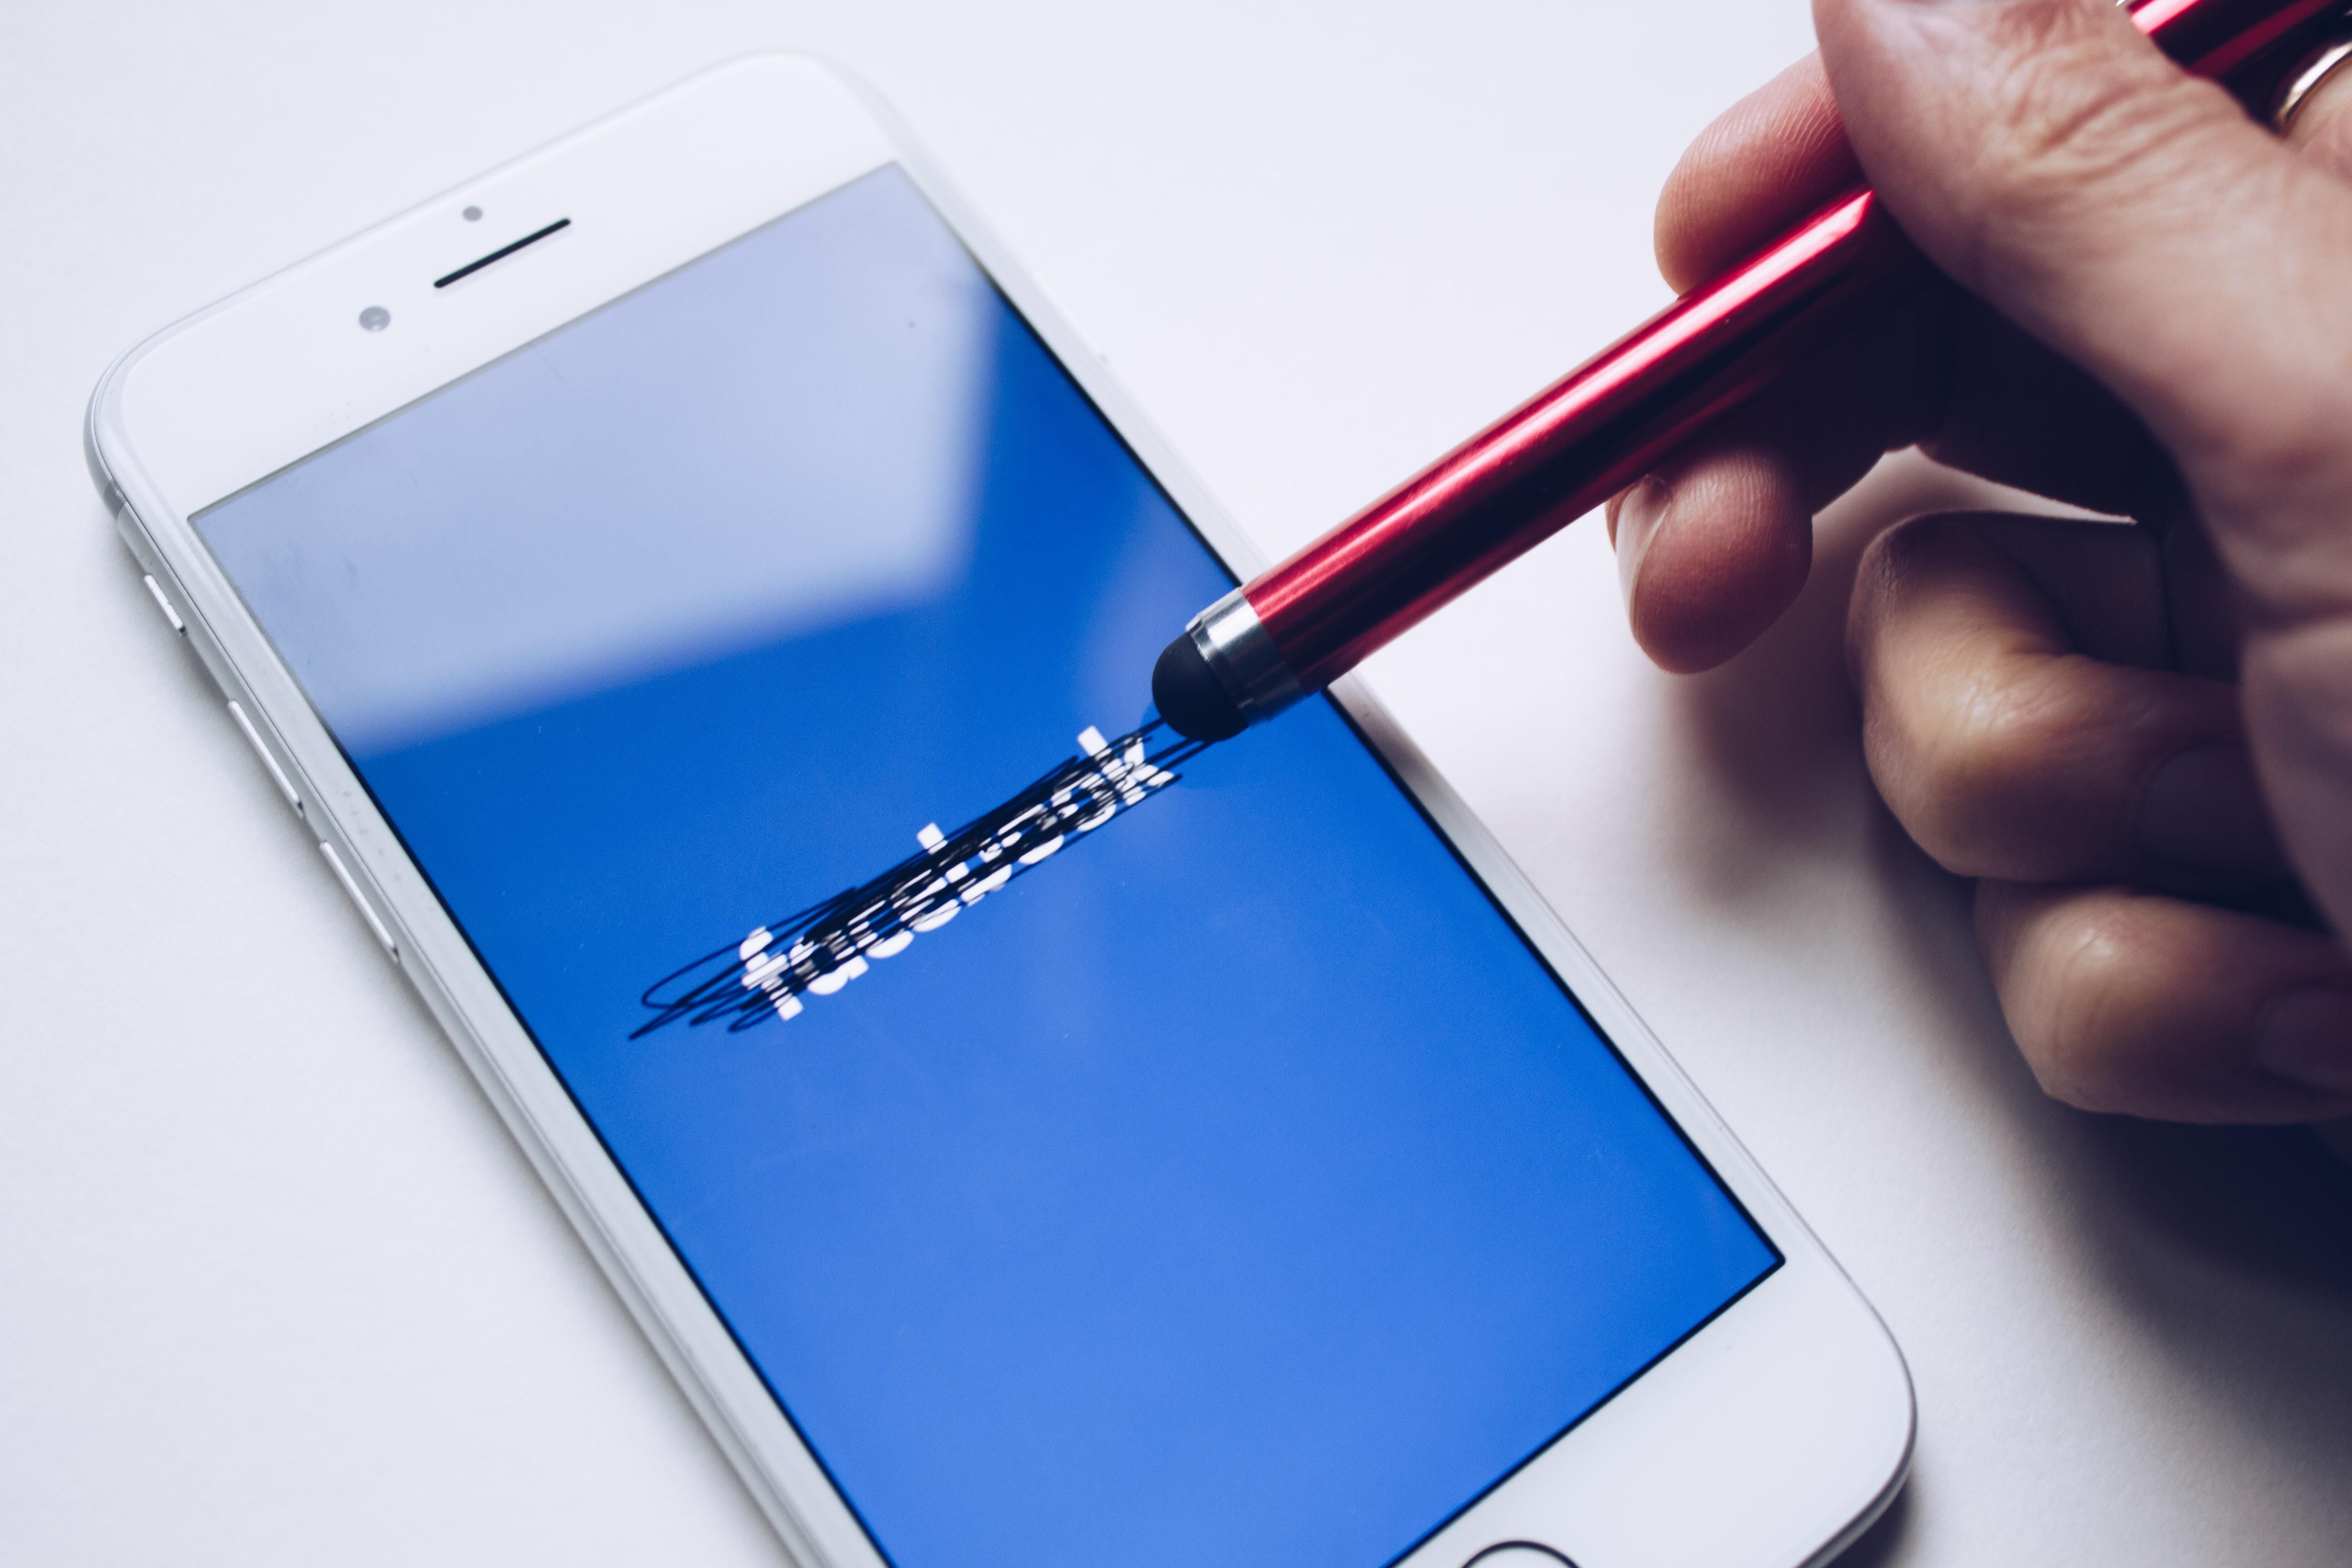 Tollal áthúzott Facebook logó egy fehér telefonon